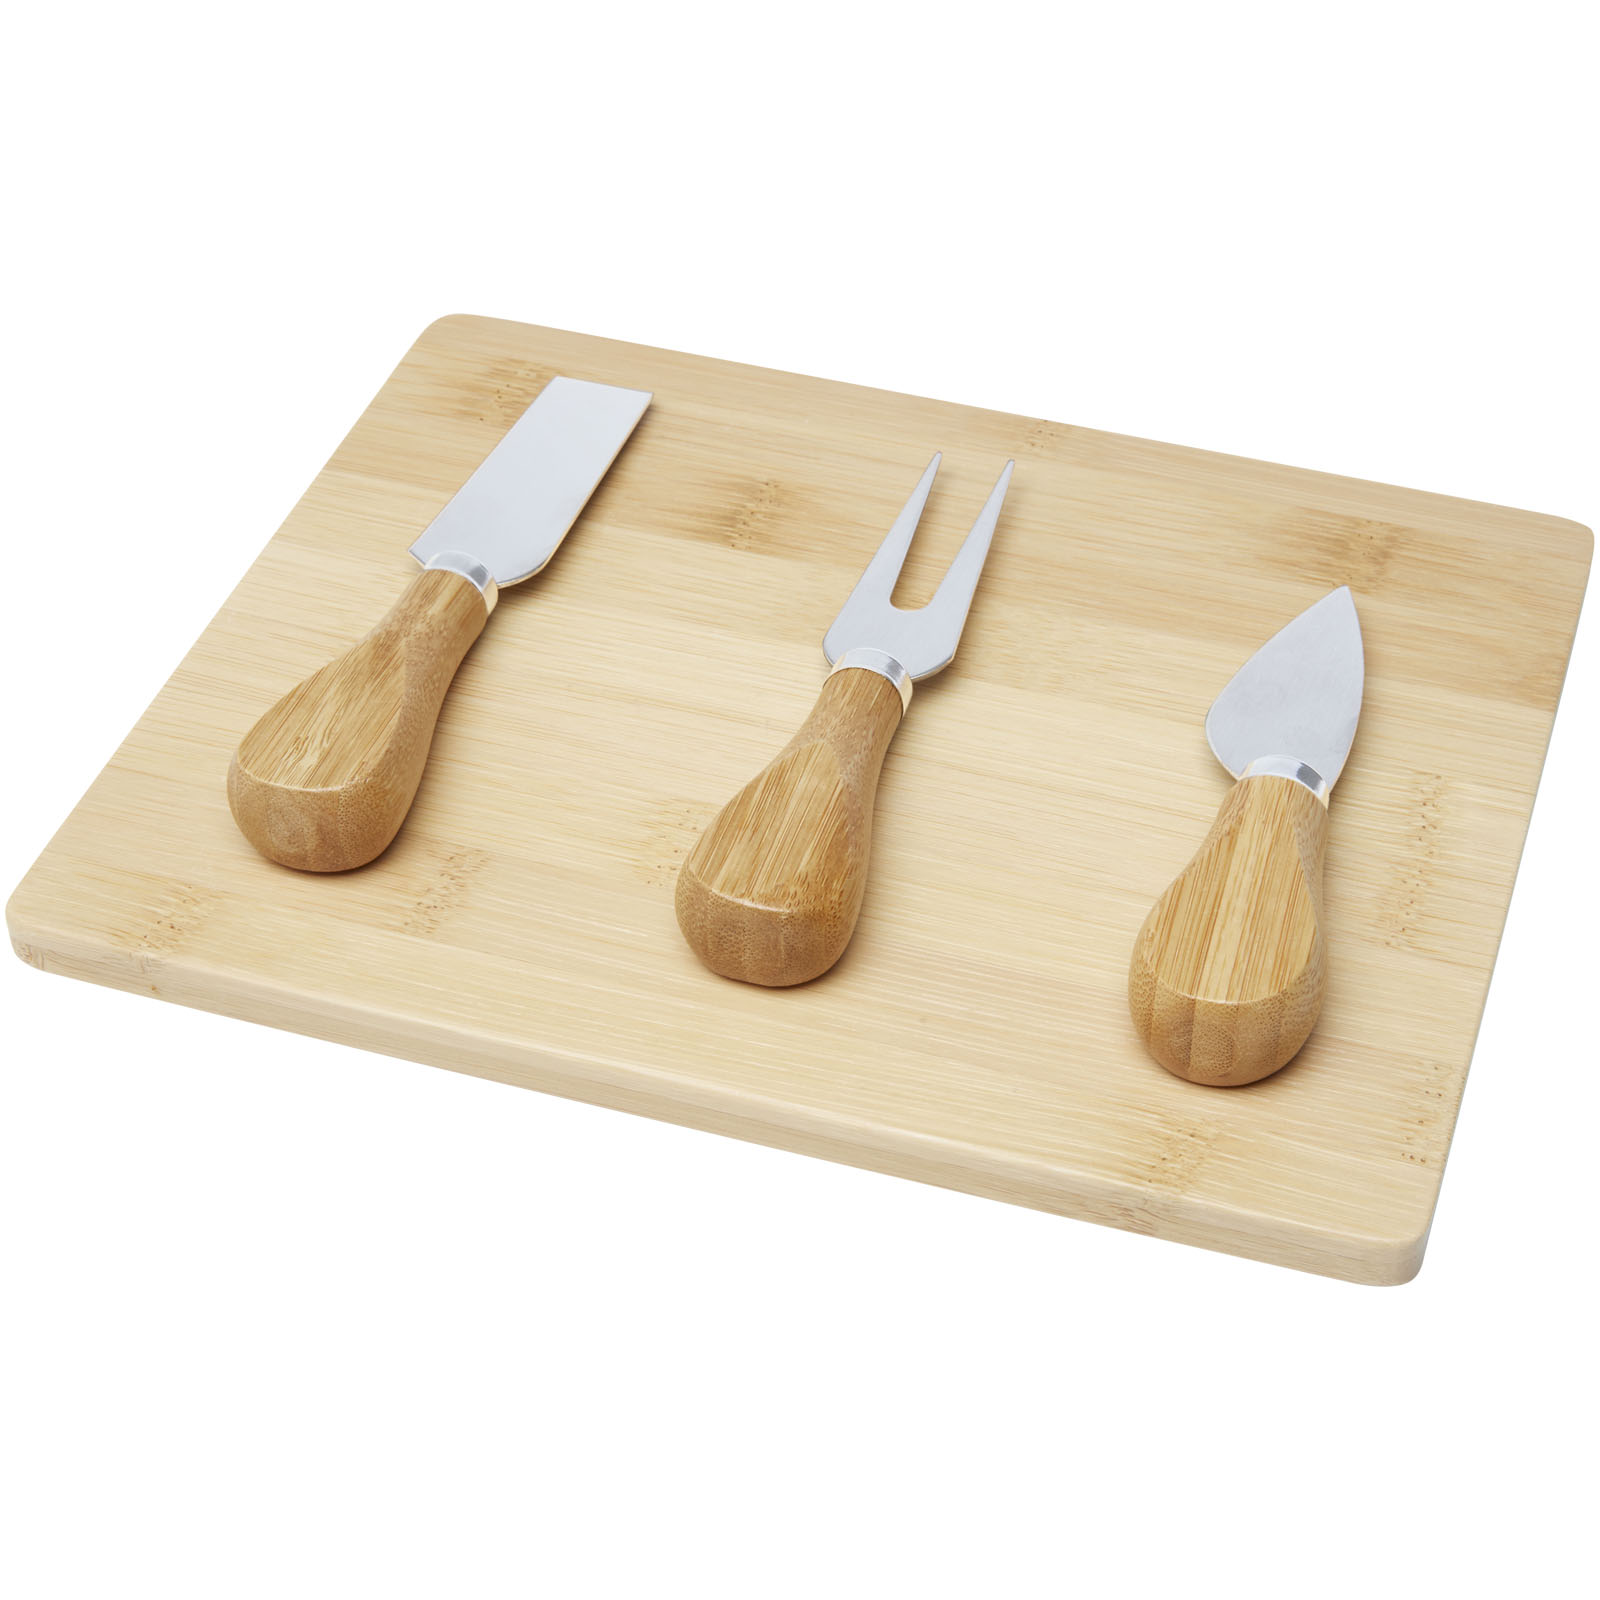 Bamboo cheese board and tool set BORTS - natural